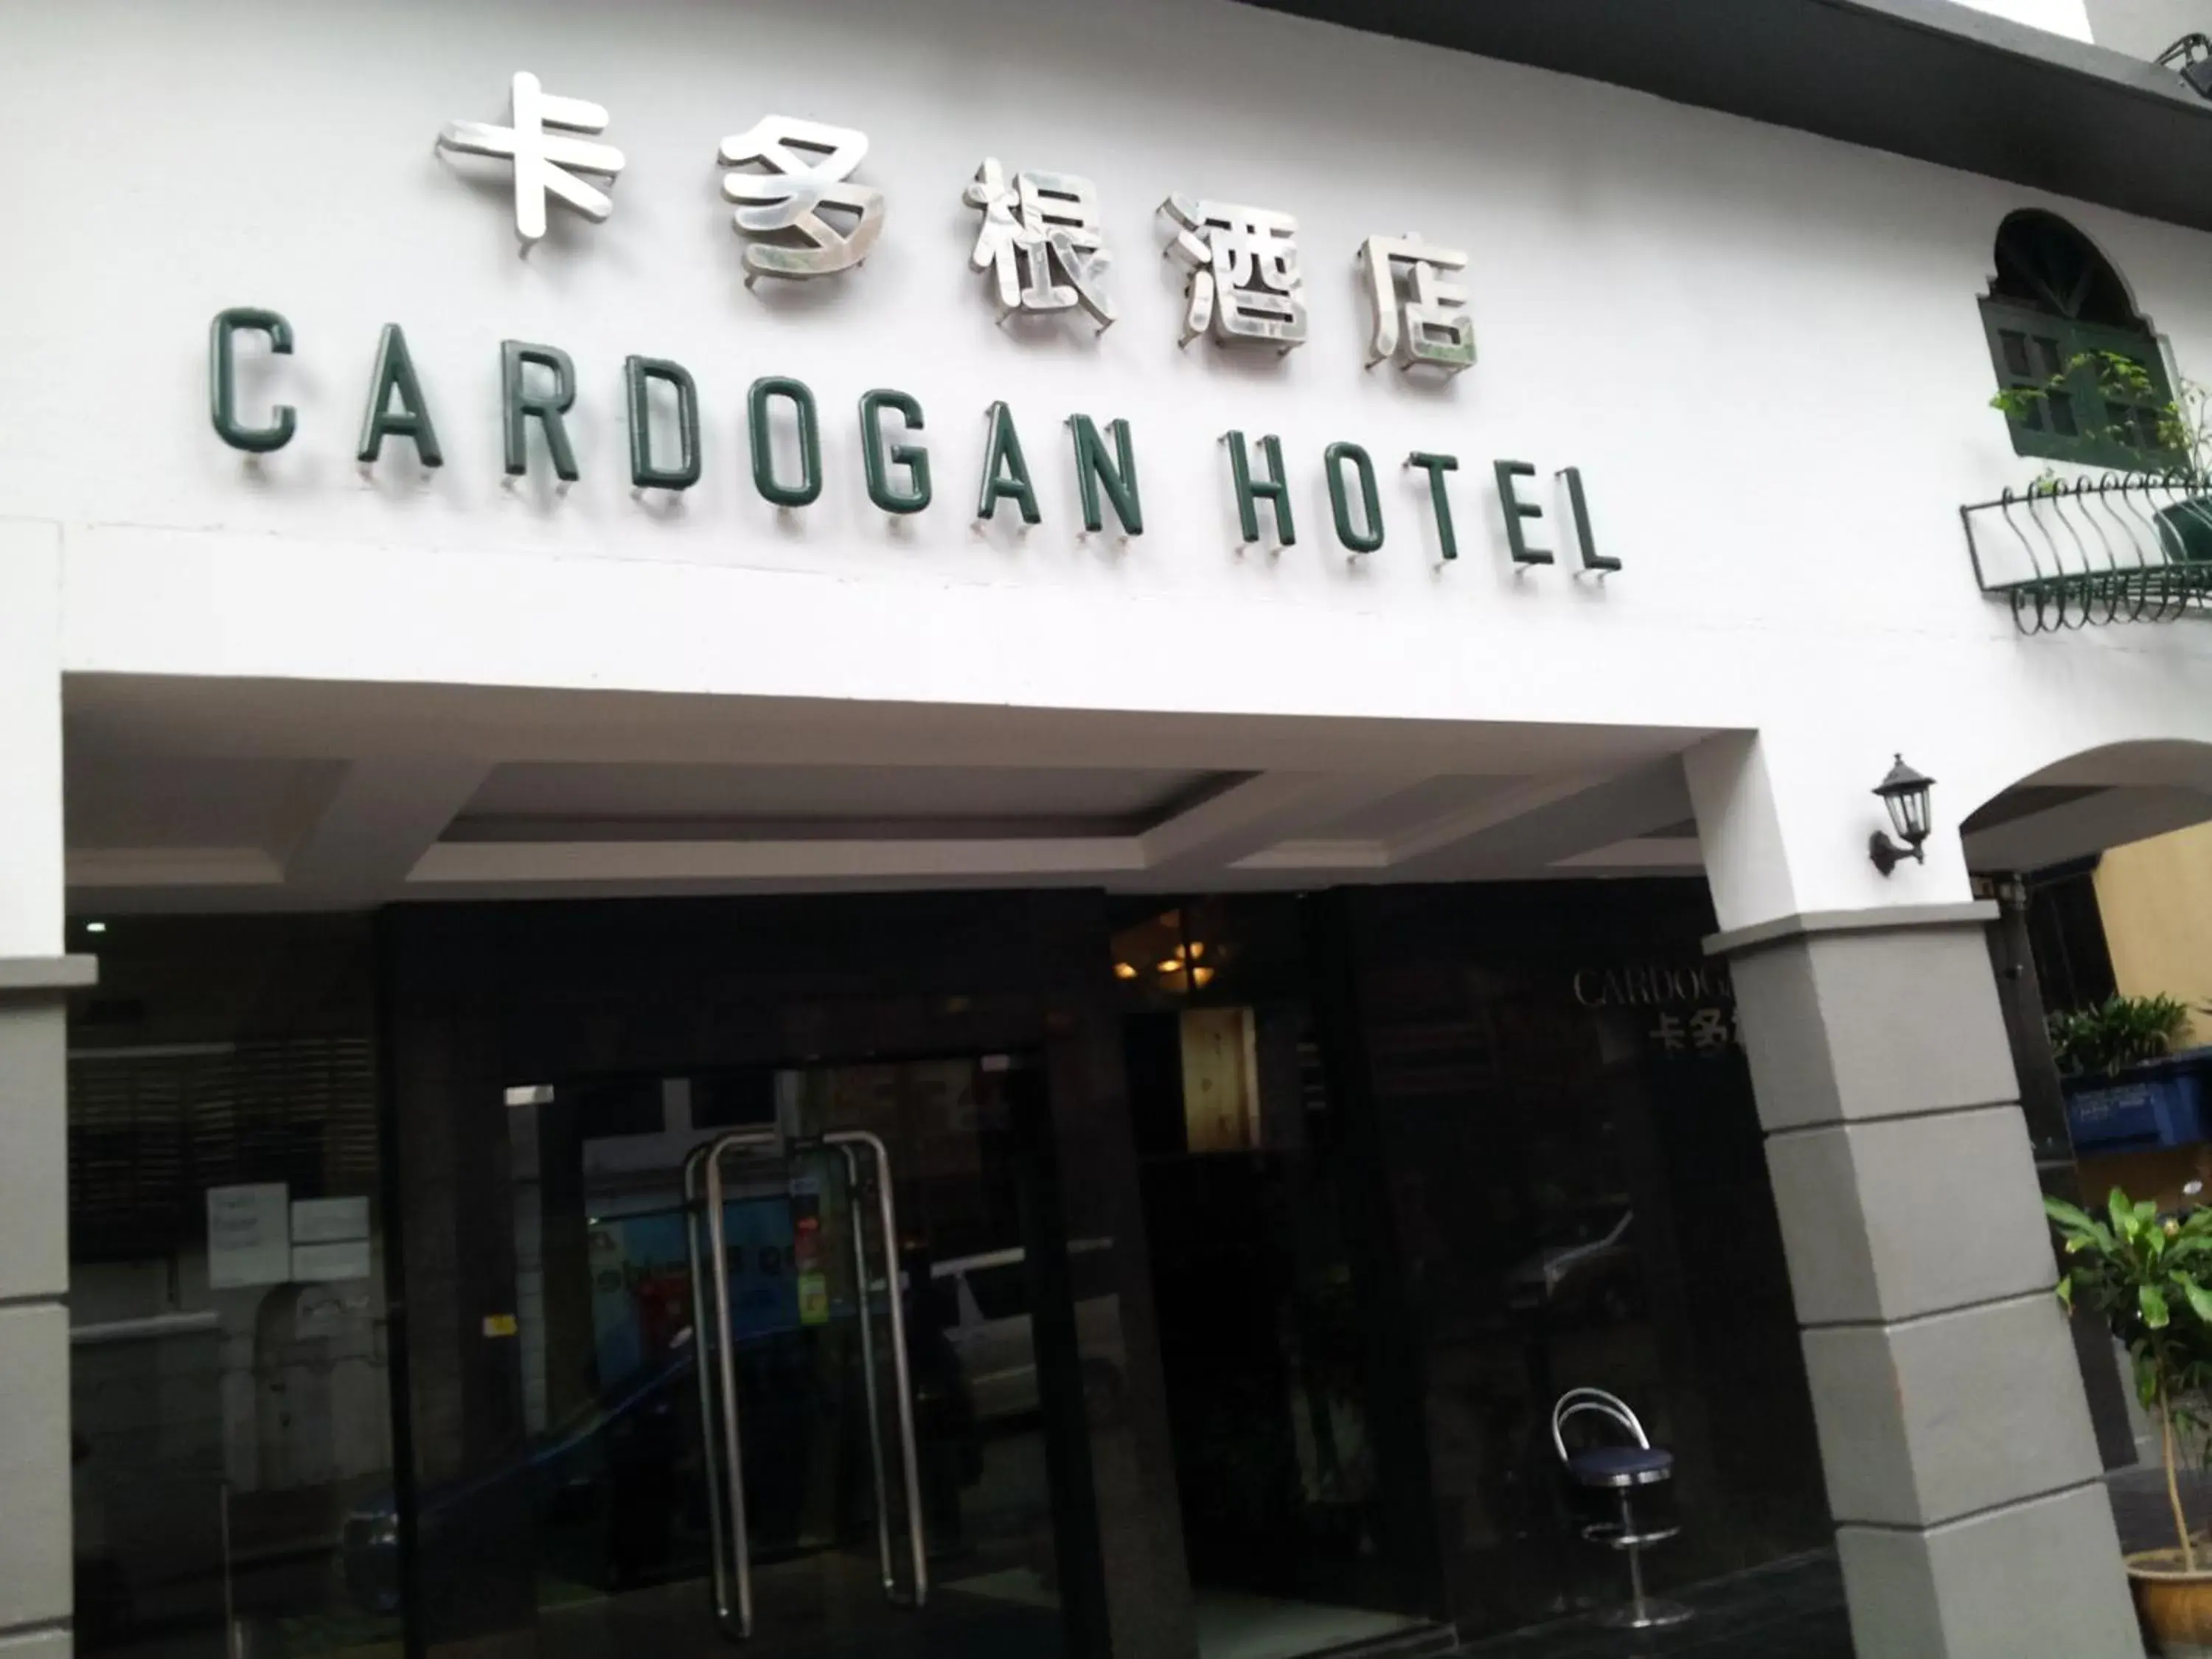 Facade/entrance in Cardogan Hotel